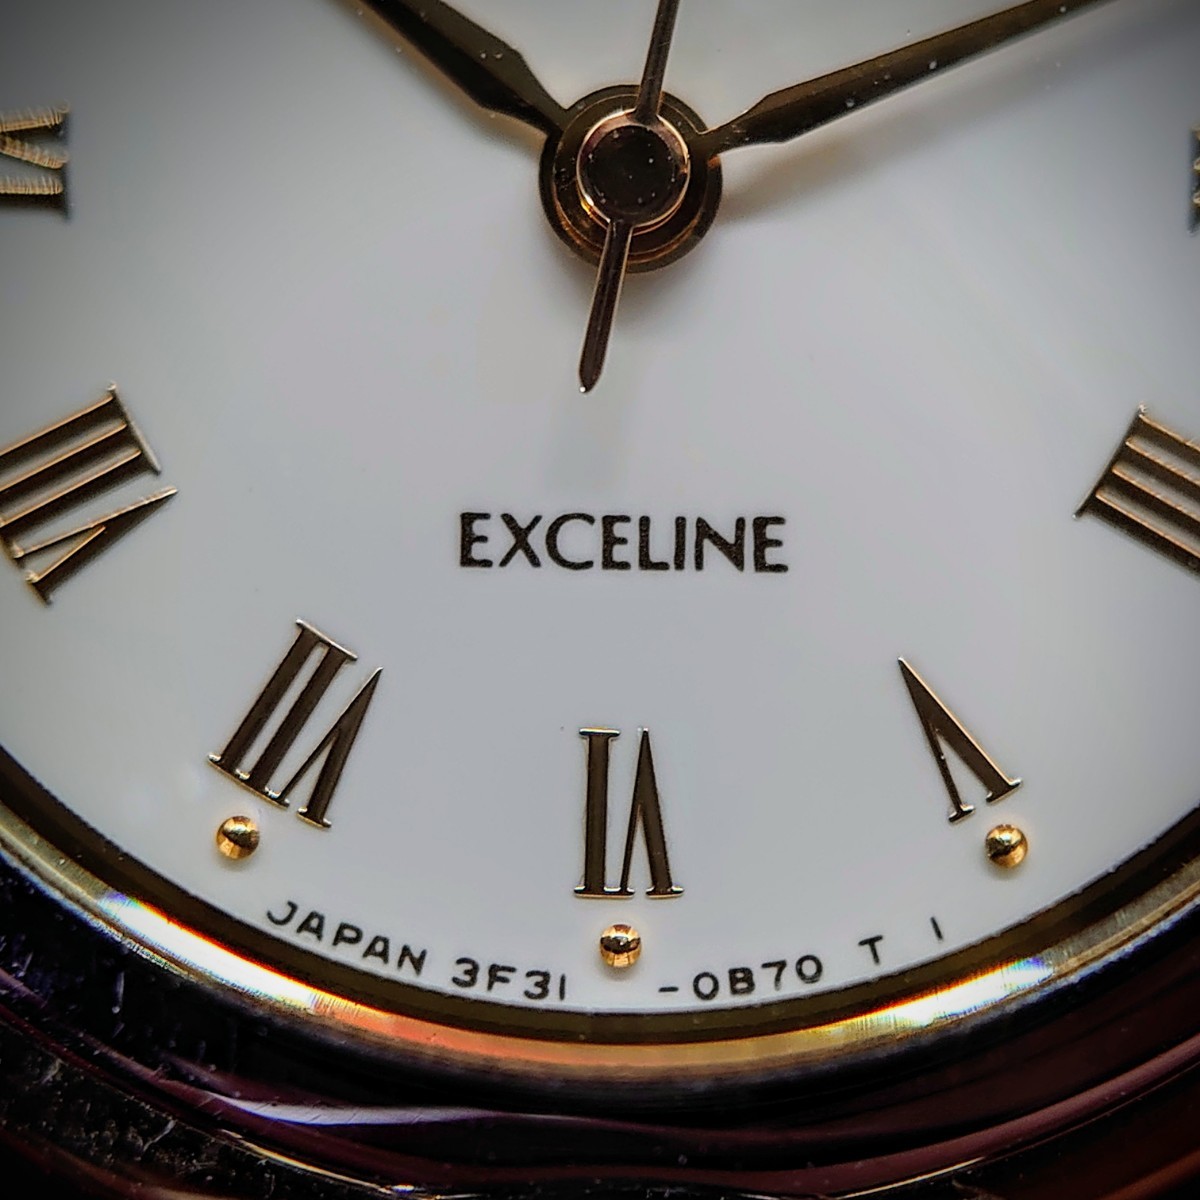 962[ рабочий товар ]SEIKO EXCELINE 3F31-0B60 женские наручные часы Gold × серебряный комбинированный ремень Seiko Exceline белый циферблат 